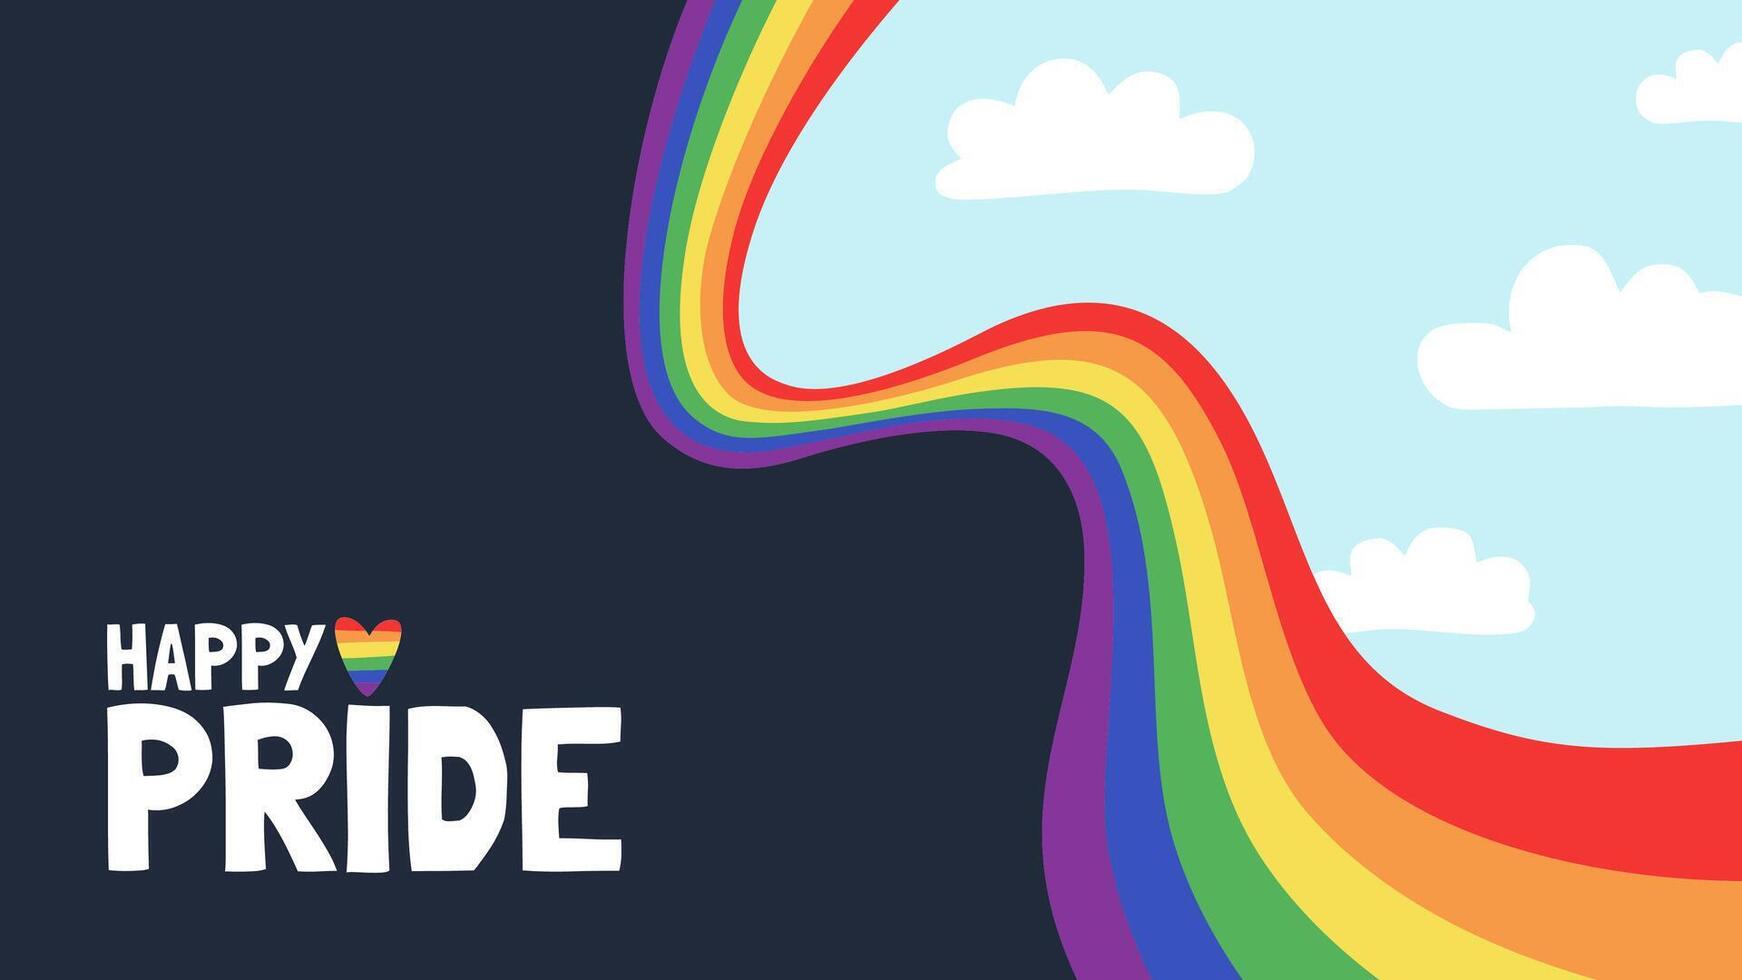 vektor baner för de stolthet. HBTQ gemenskap illustration med regnbåge och text. HBTQ flagga, regnbåge flagga.